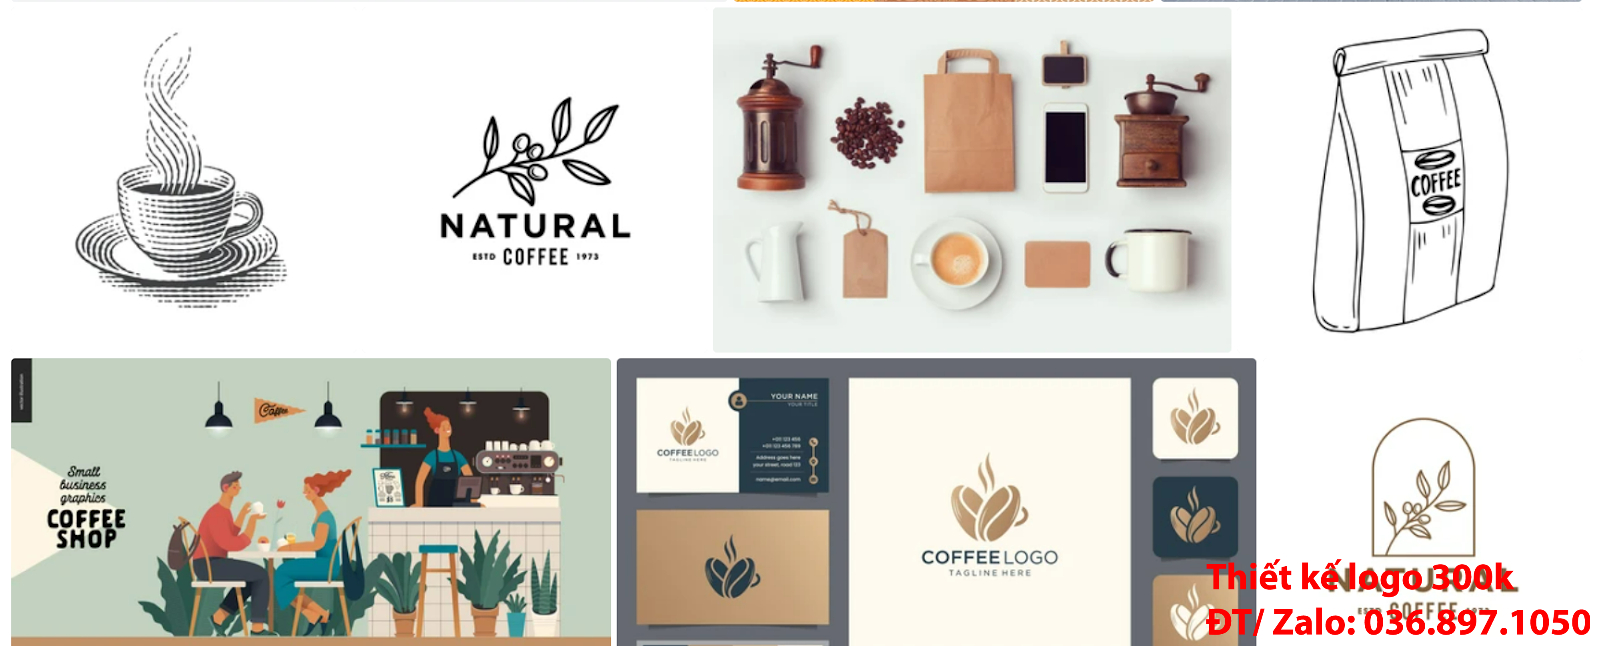 Dịch vụ tạo mẫu logo đẹp cà phê cafe coffee sáng tạo uy tín